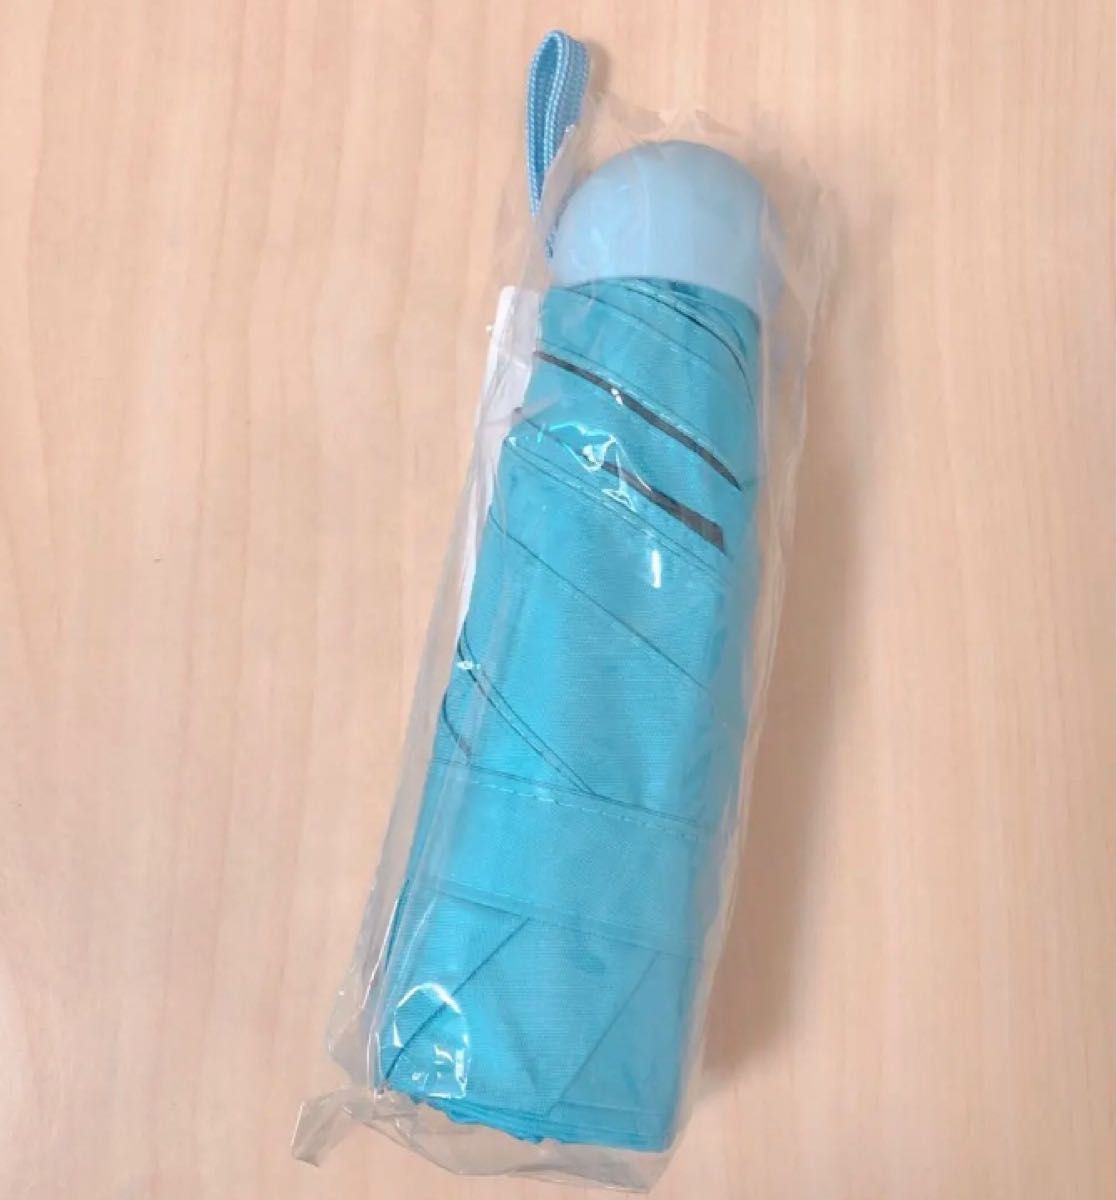 【新品2点限り】晴雨兼用 折りたたみ傘 UVカット 斜光 雨傘 日傘 男女兼用 ブルー 青 水色 コンパクト 持ち運び 